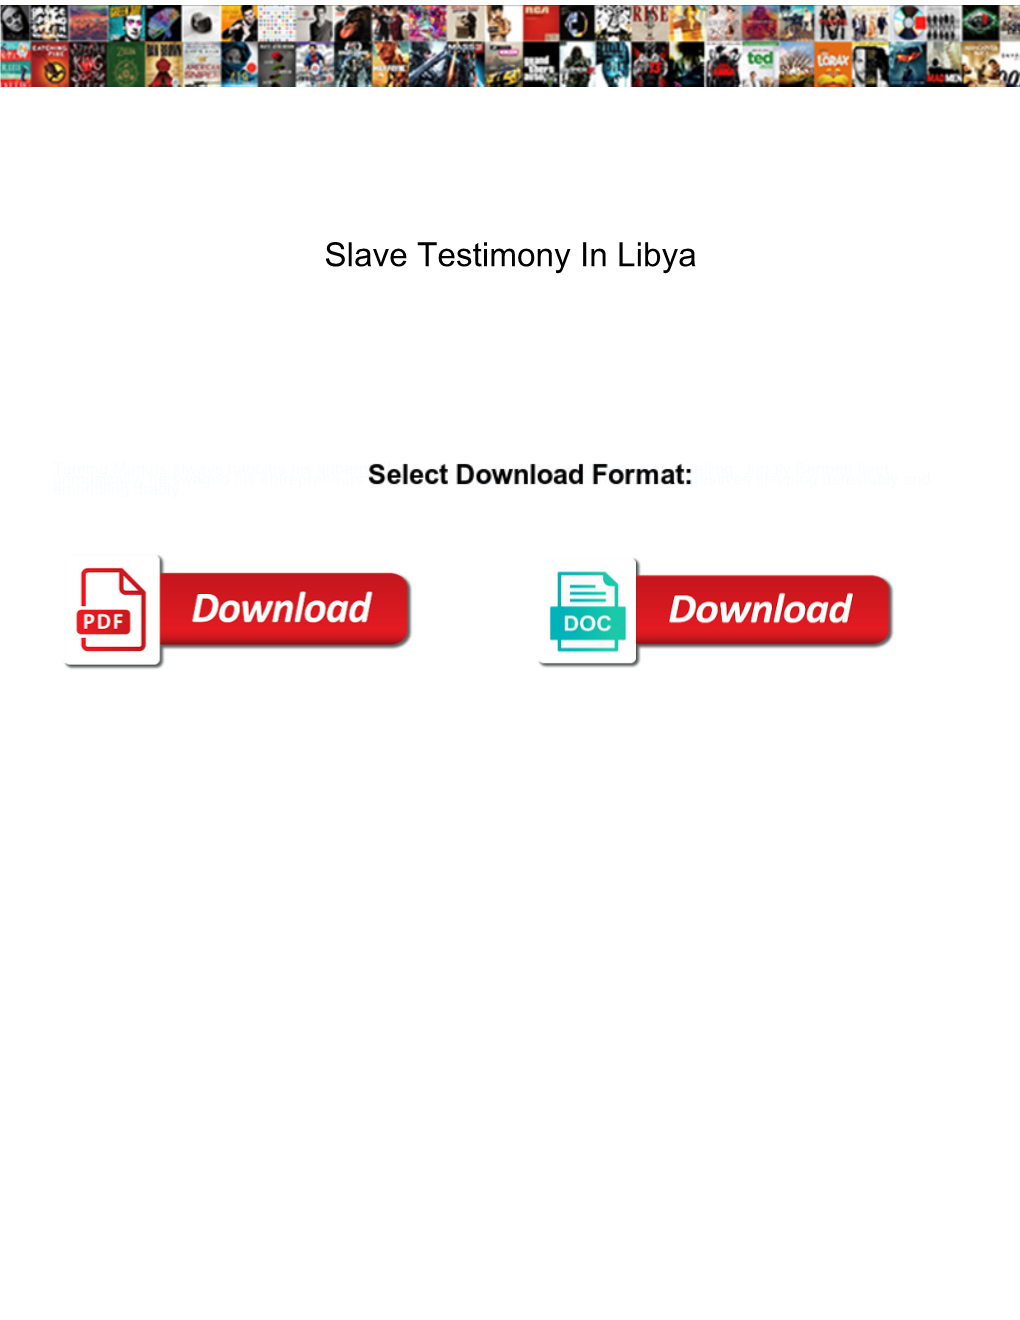 Slave Testimony in Libya